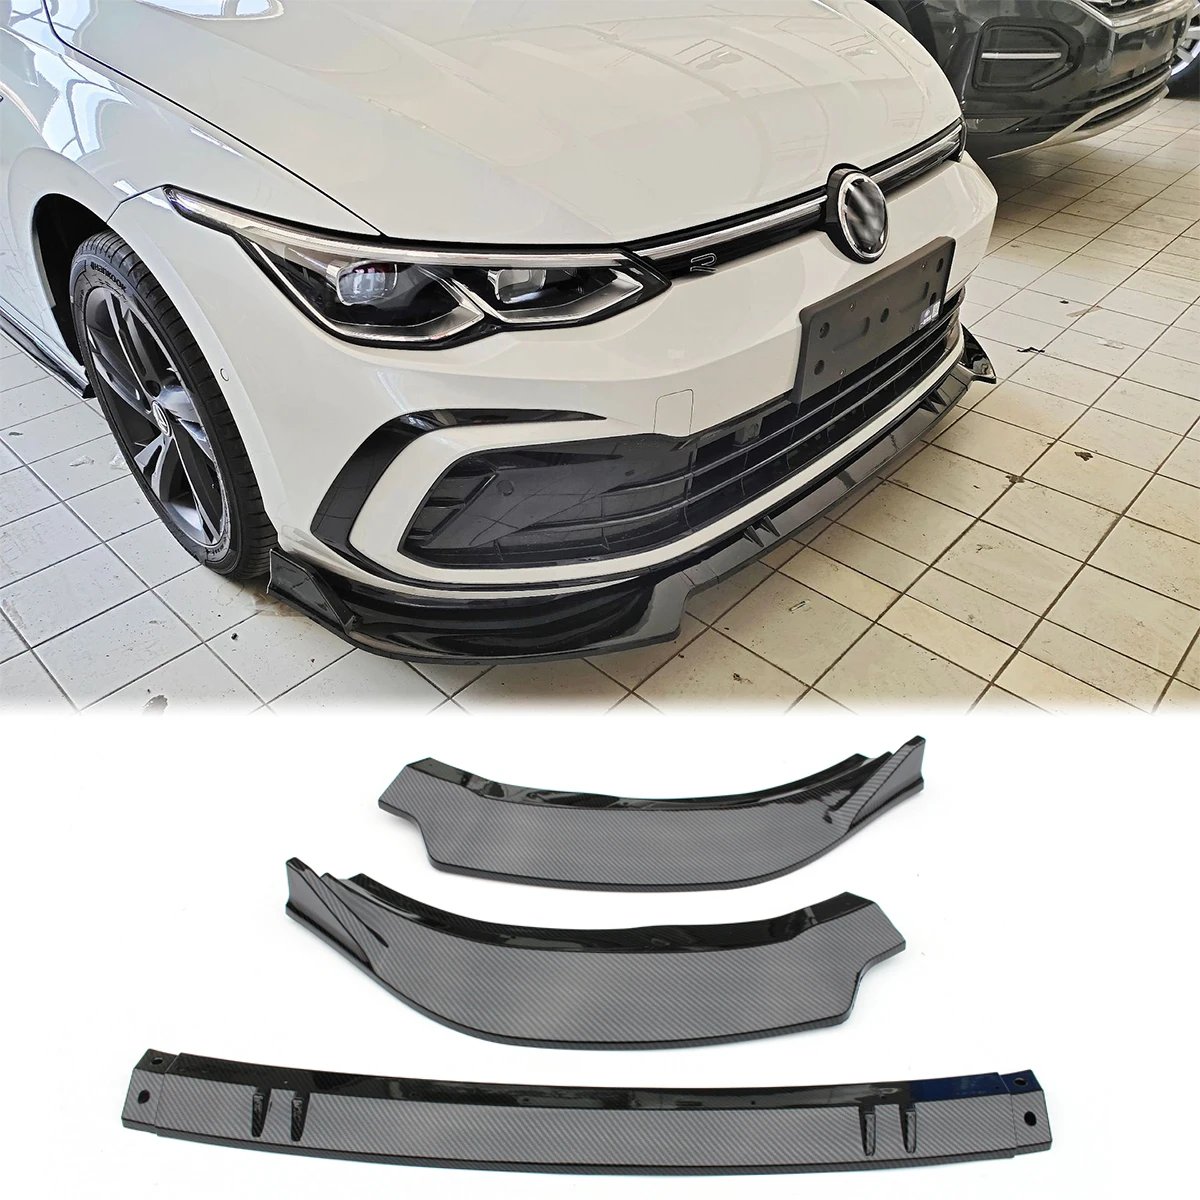 ด้านหน้ากันชนด้านล่าง Splitter สปอยเลอร์ Body Kit สำหรับ Volkswagen VW Golf 8 MK8 R Line Pro 2020 2021คาร์บอนไฟเบอร์สีดำ